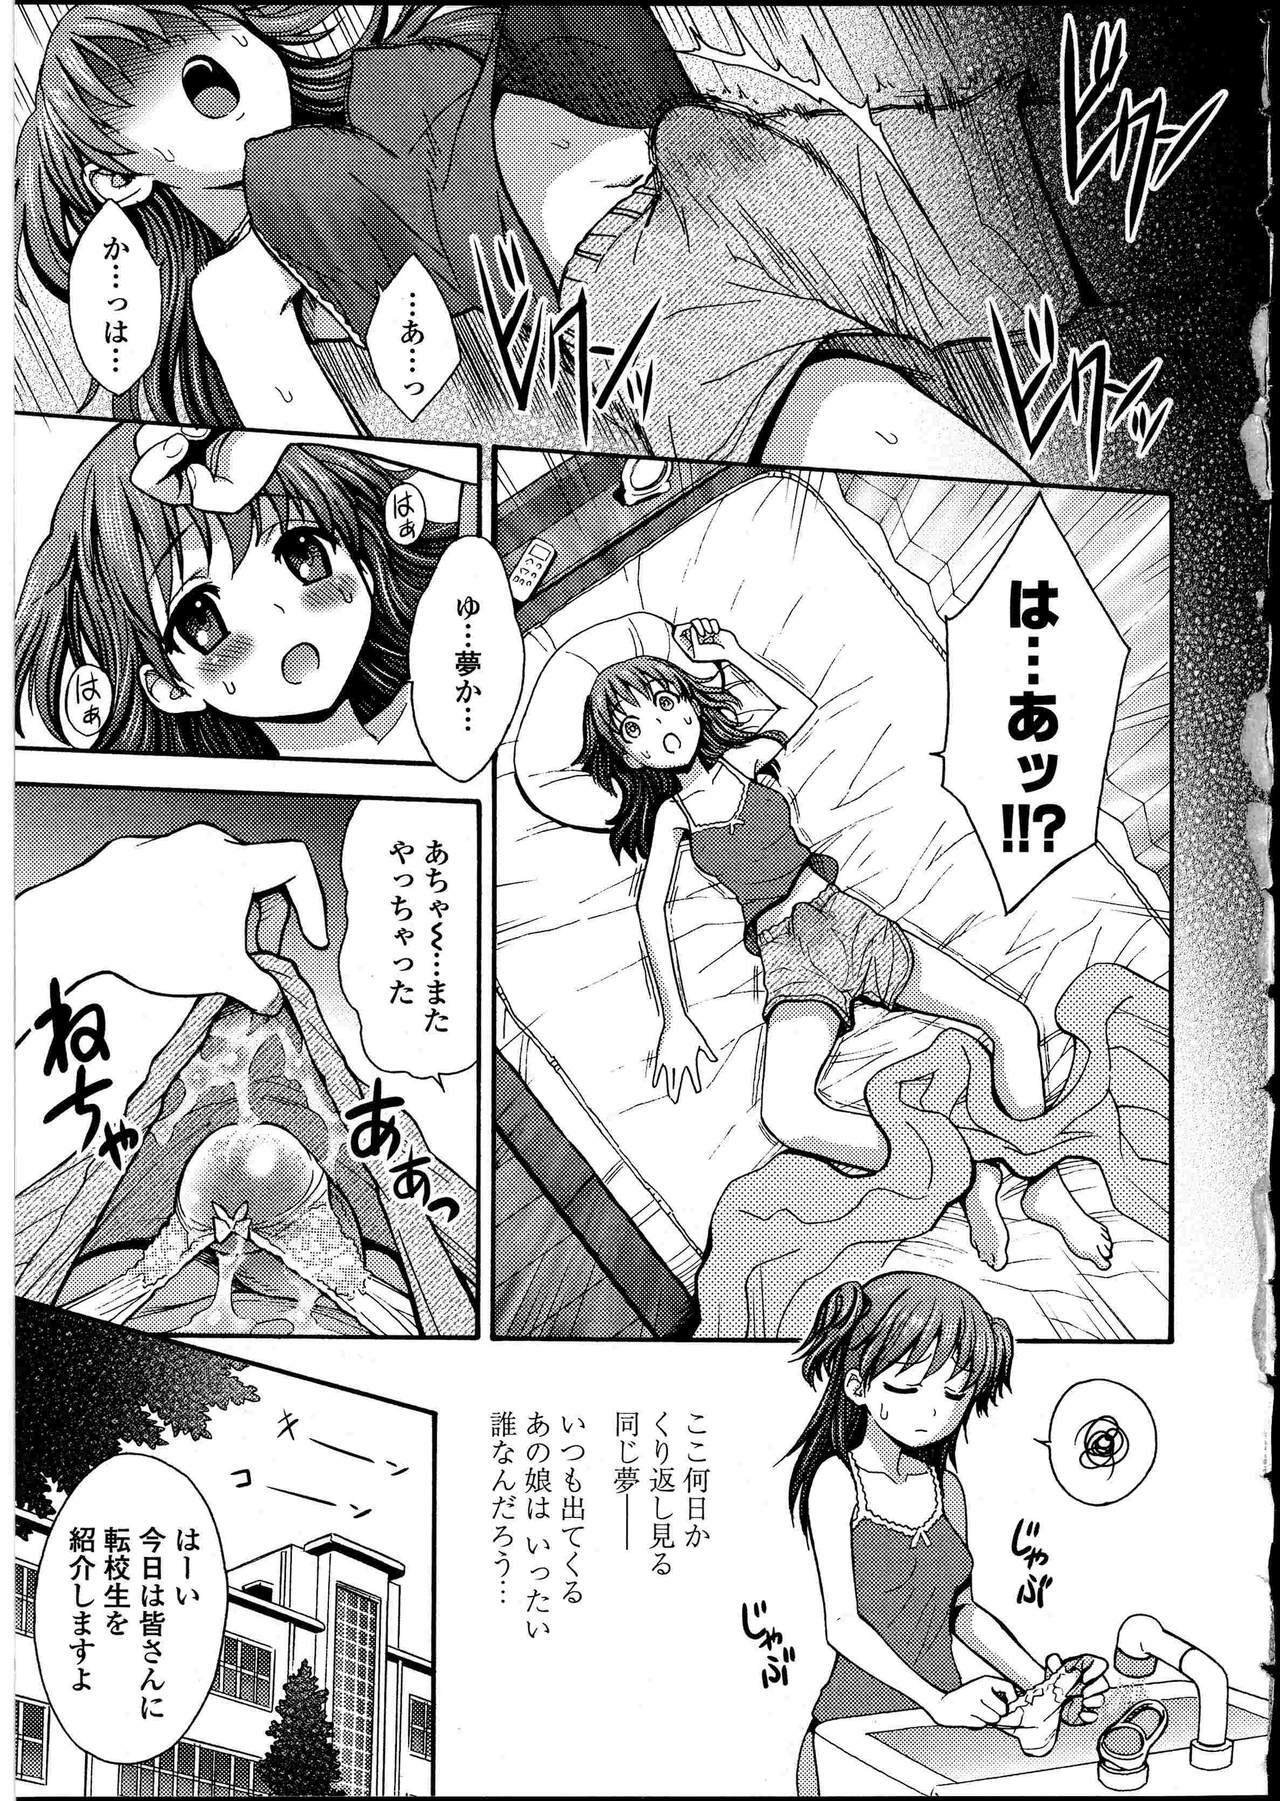 [Anthology] Futanarikko no Sekai 4 page 8 full